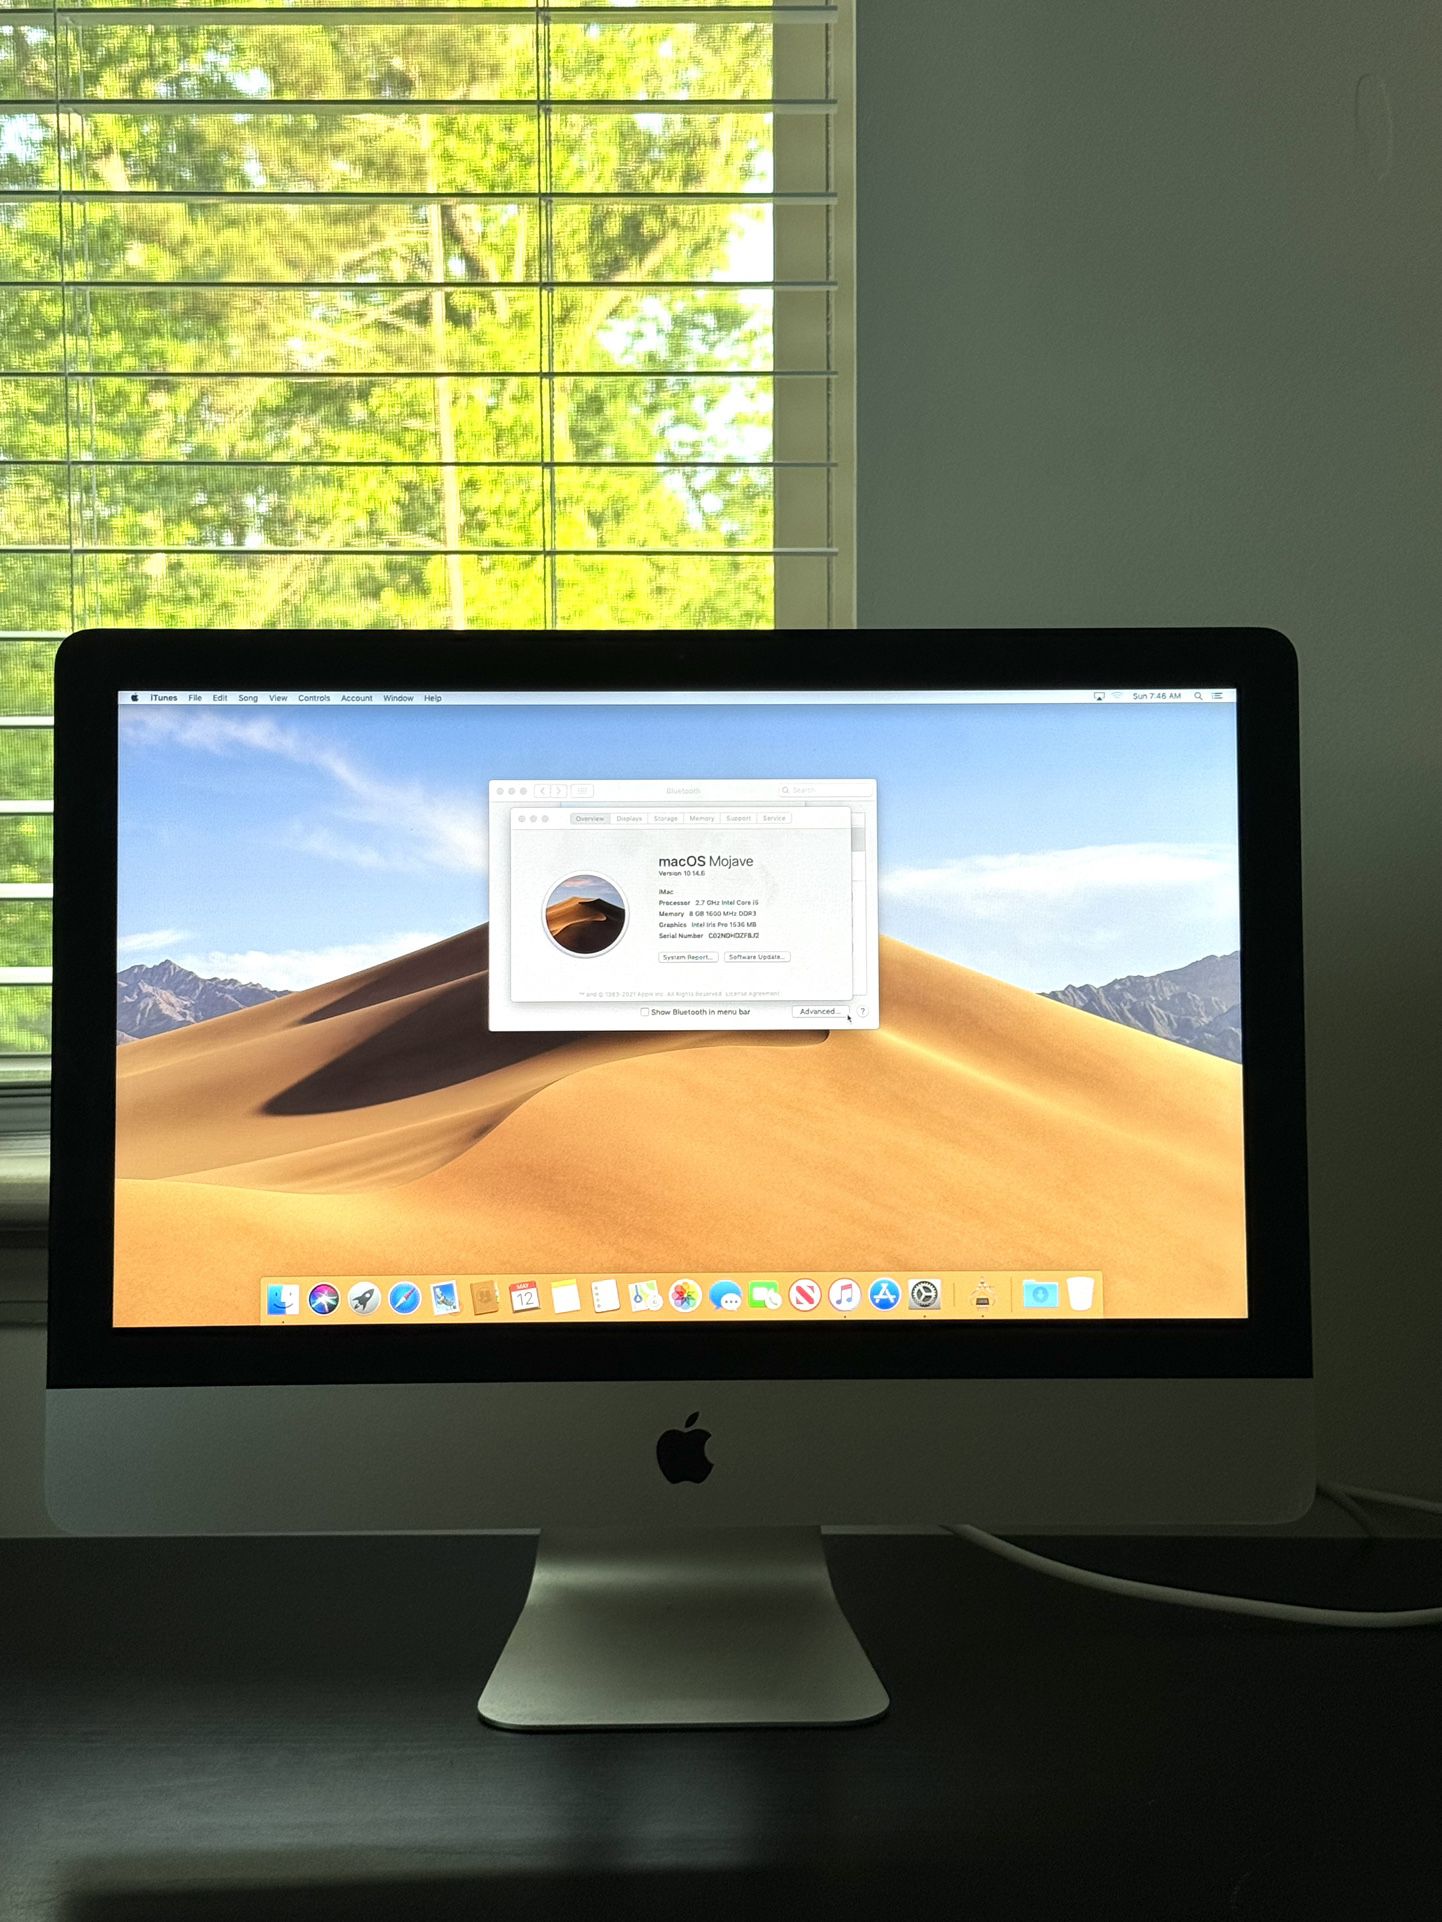 iMac “Core i5” 2.7 21.5” (Late 2013)